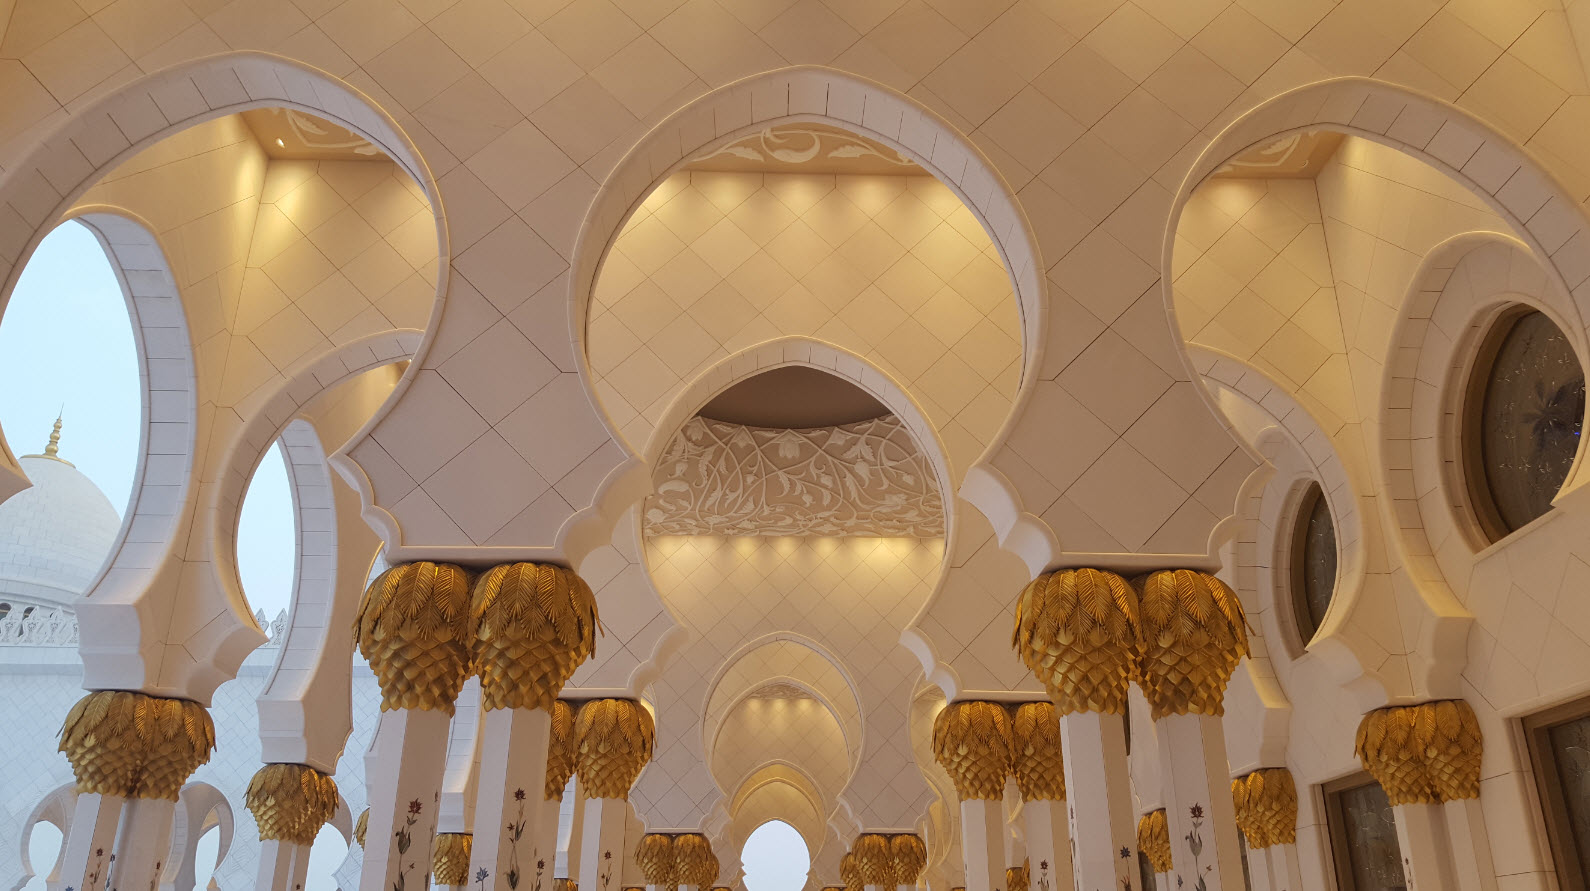 Mosque Sheikh Zayed